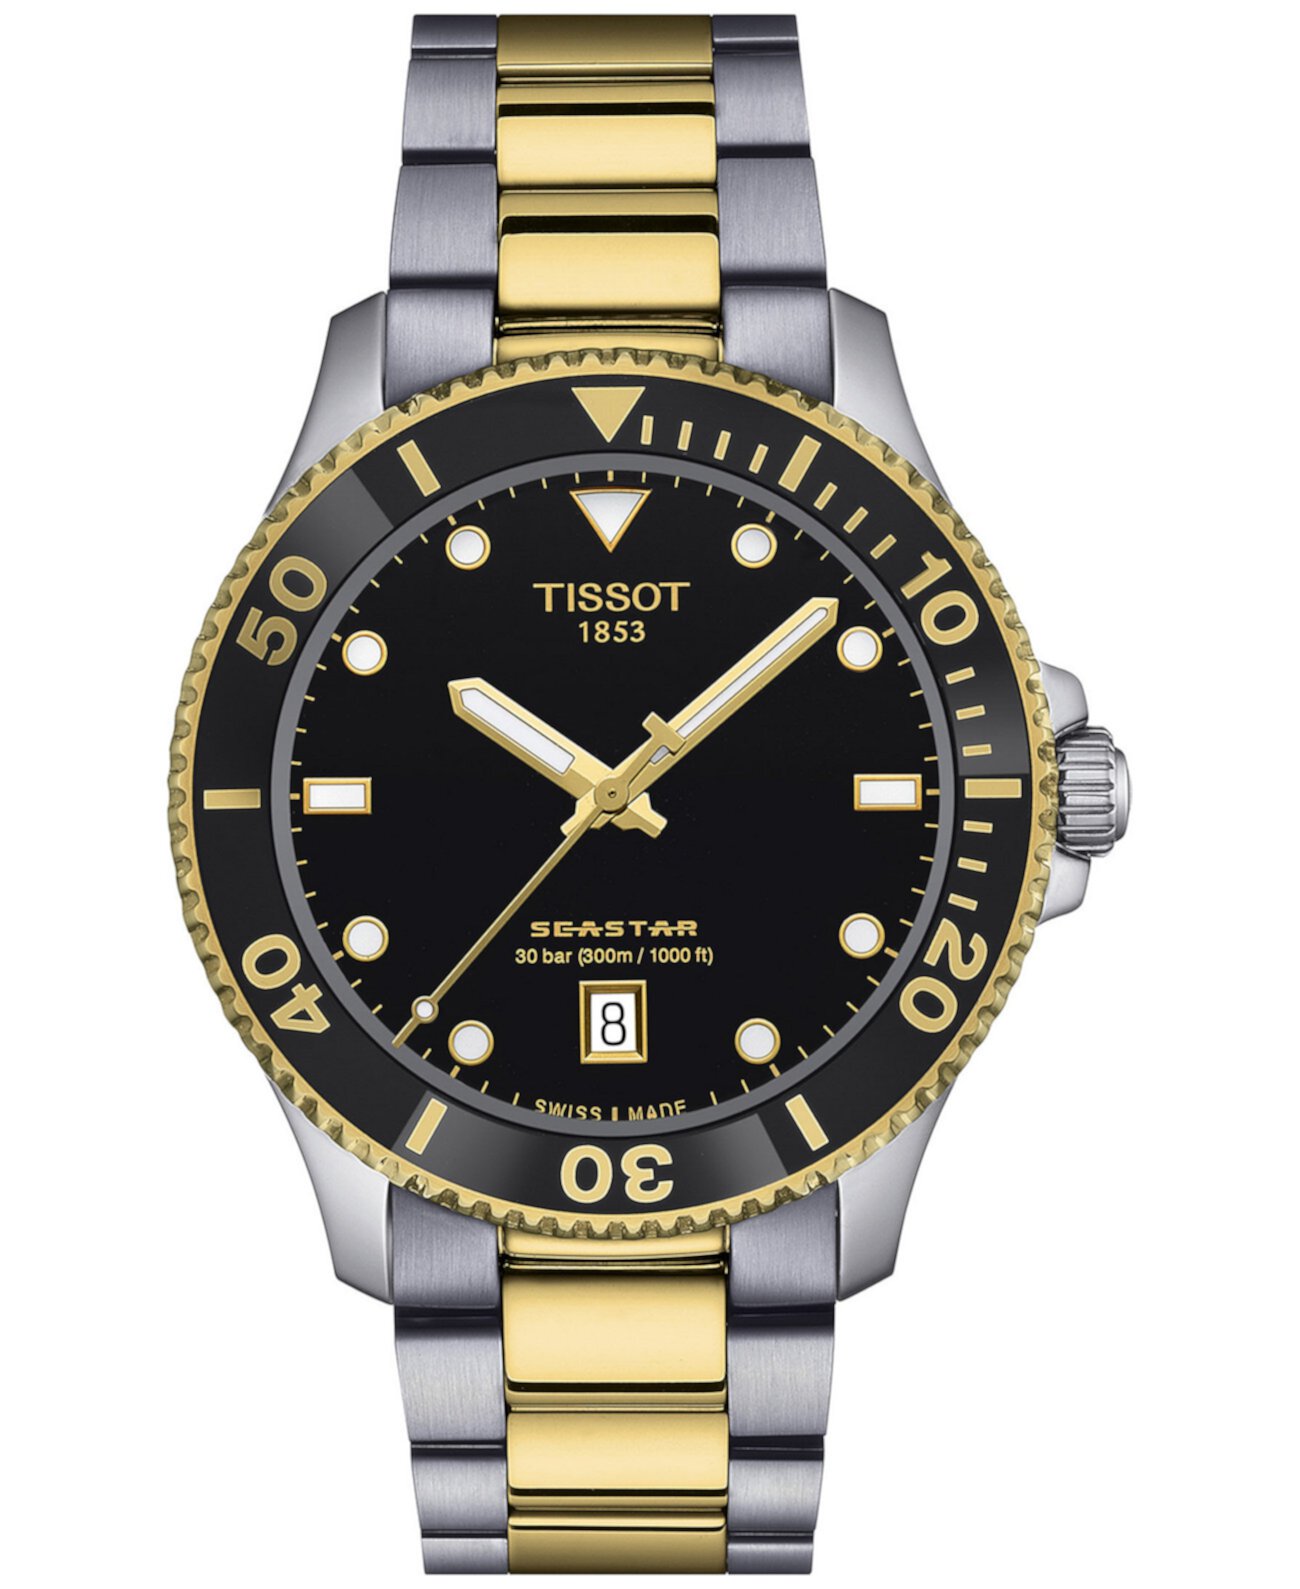 Мужские швейцарские часы Seastar 1000 с двухцветным браслетом из нержавеющей стали, 40 мм Tissot